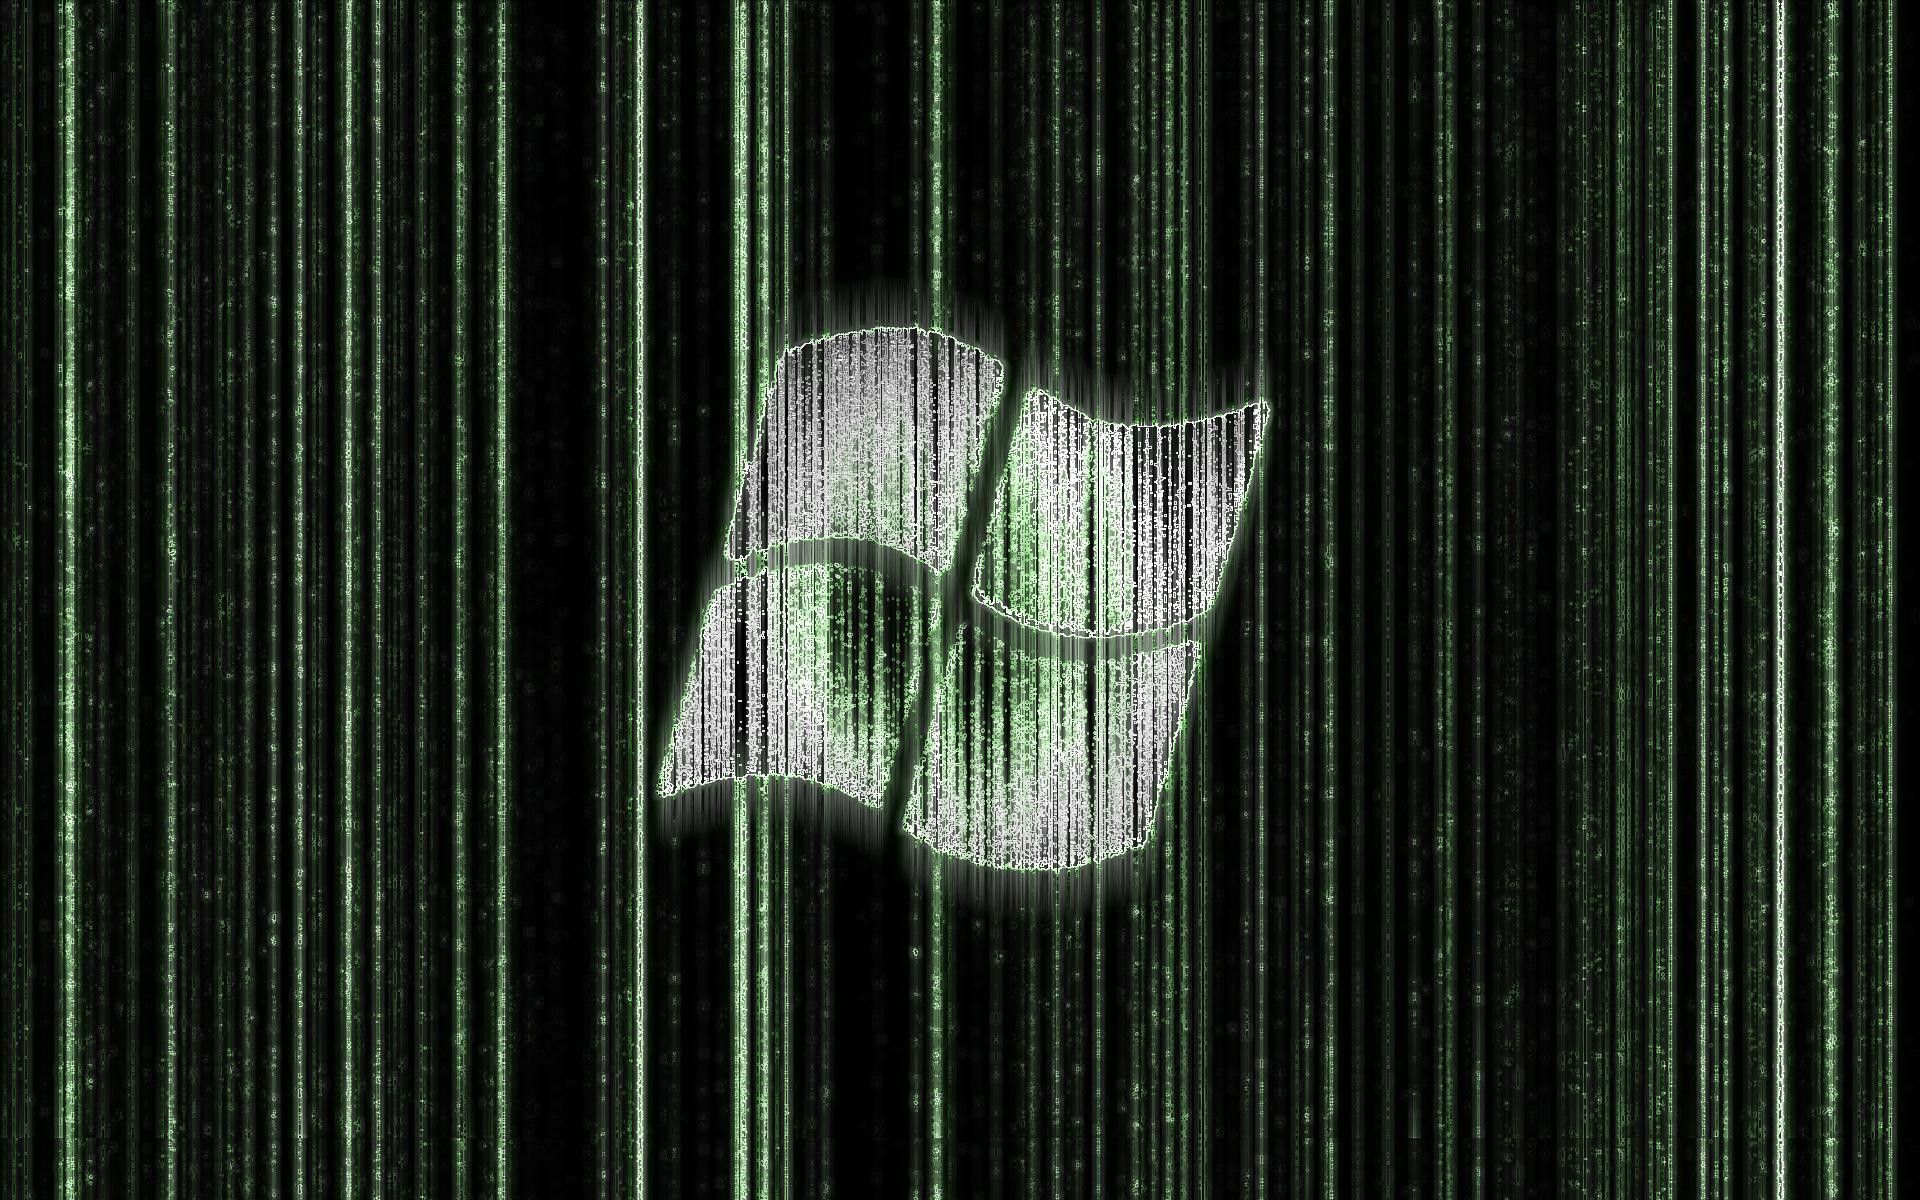 Descargar Matrix Wallpapers Hd Images. Matrix Windows Wallpaper Hd